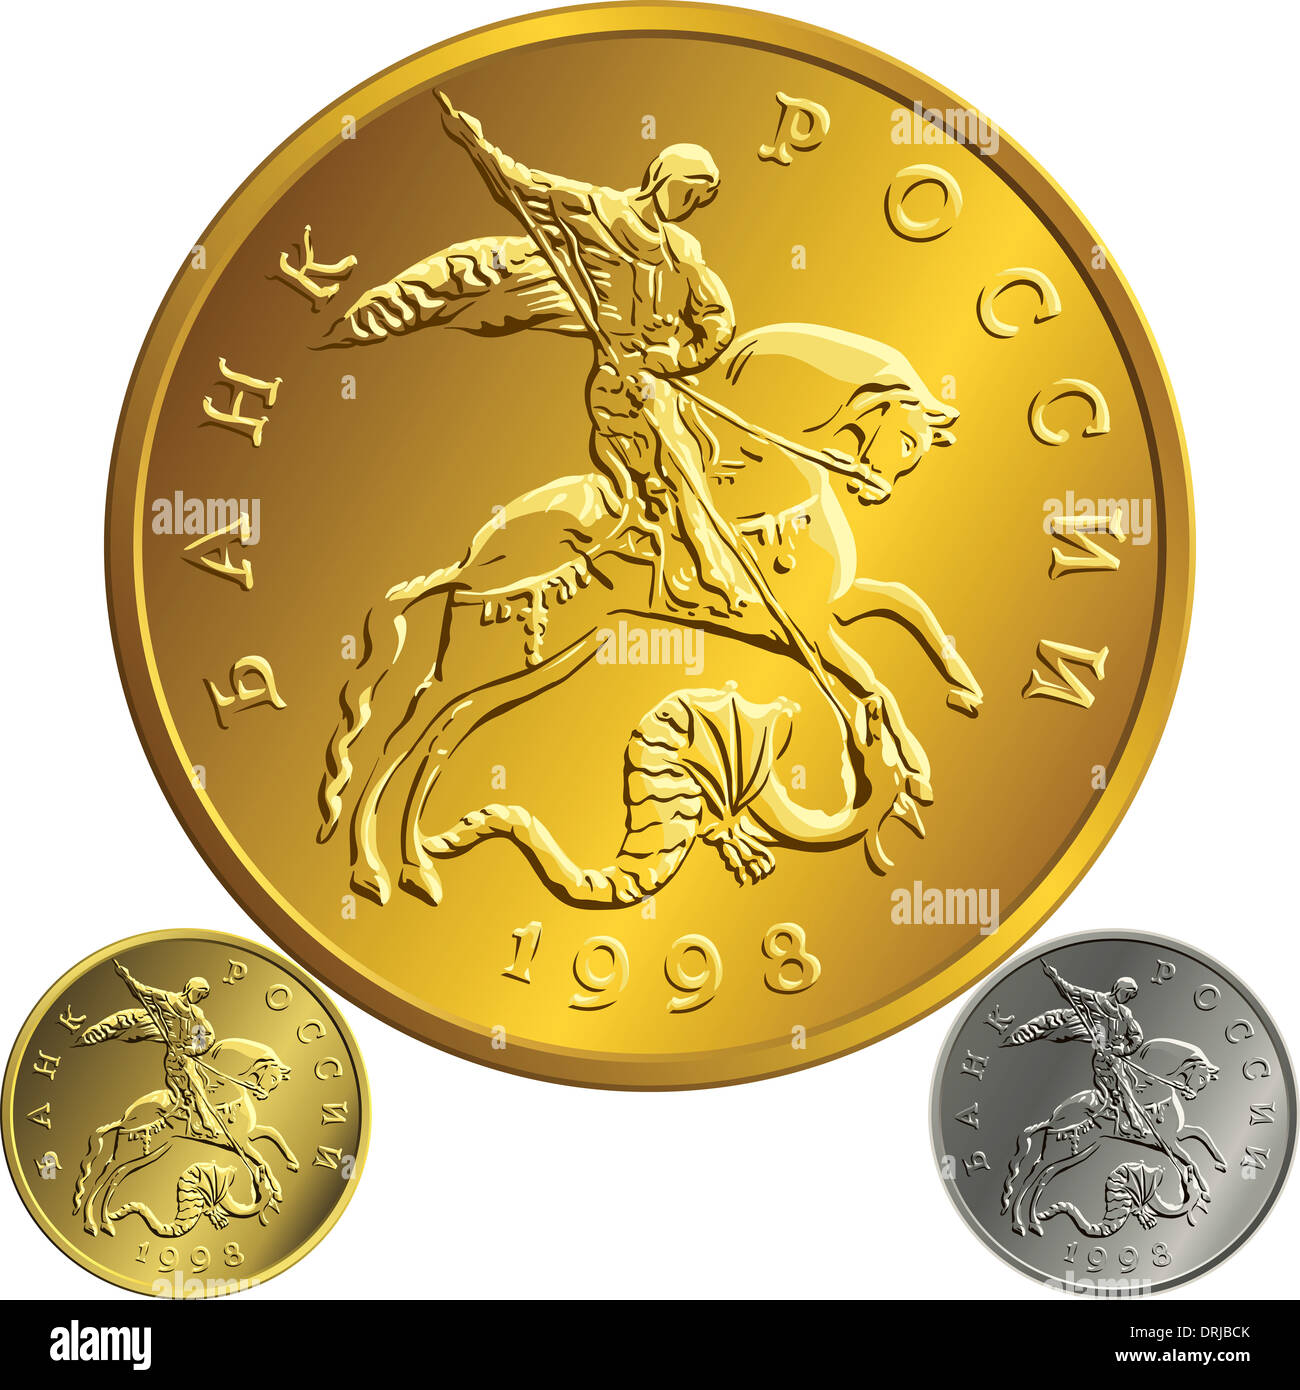 Ensemble de la Fédération de l'argent, l'or, de l'argent monnaie rouble avec l'image de Saint Georges terrassant le serpent, isolé sur fond blanc Banque D'Images